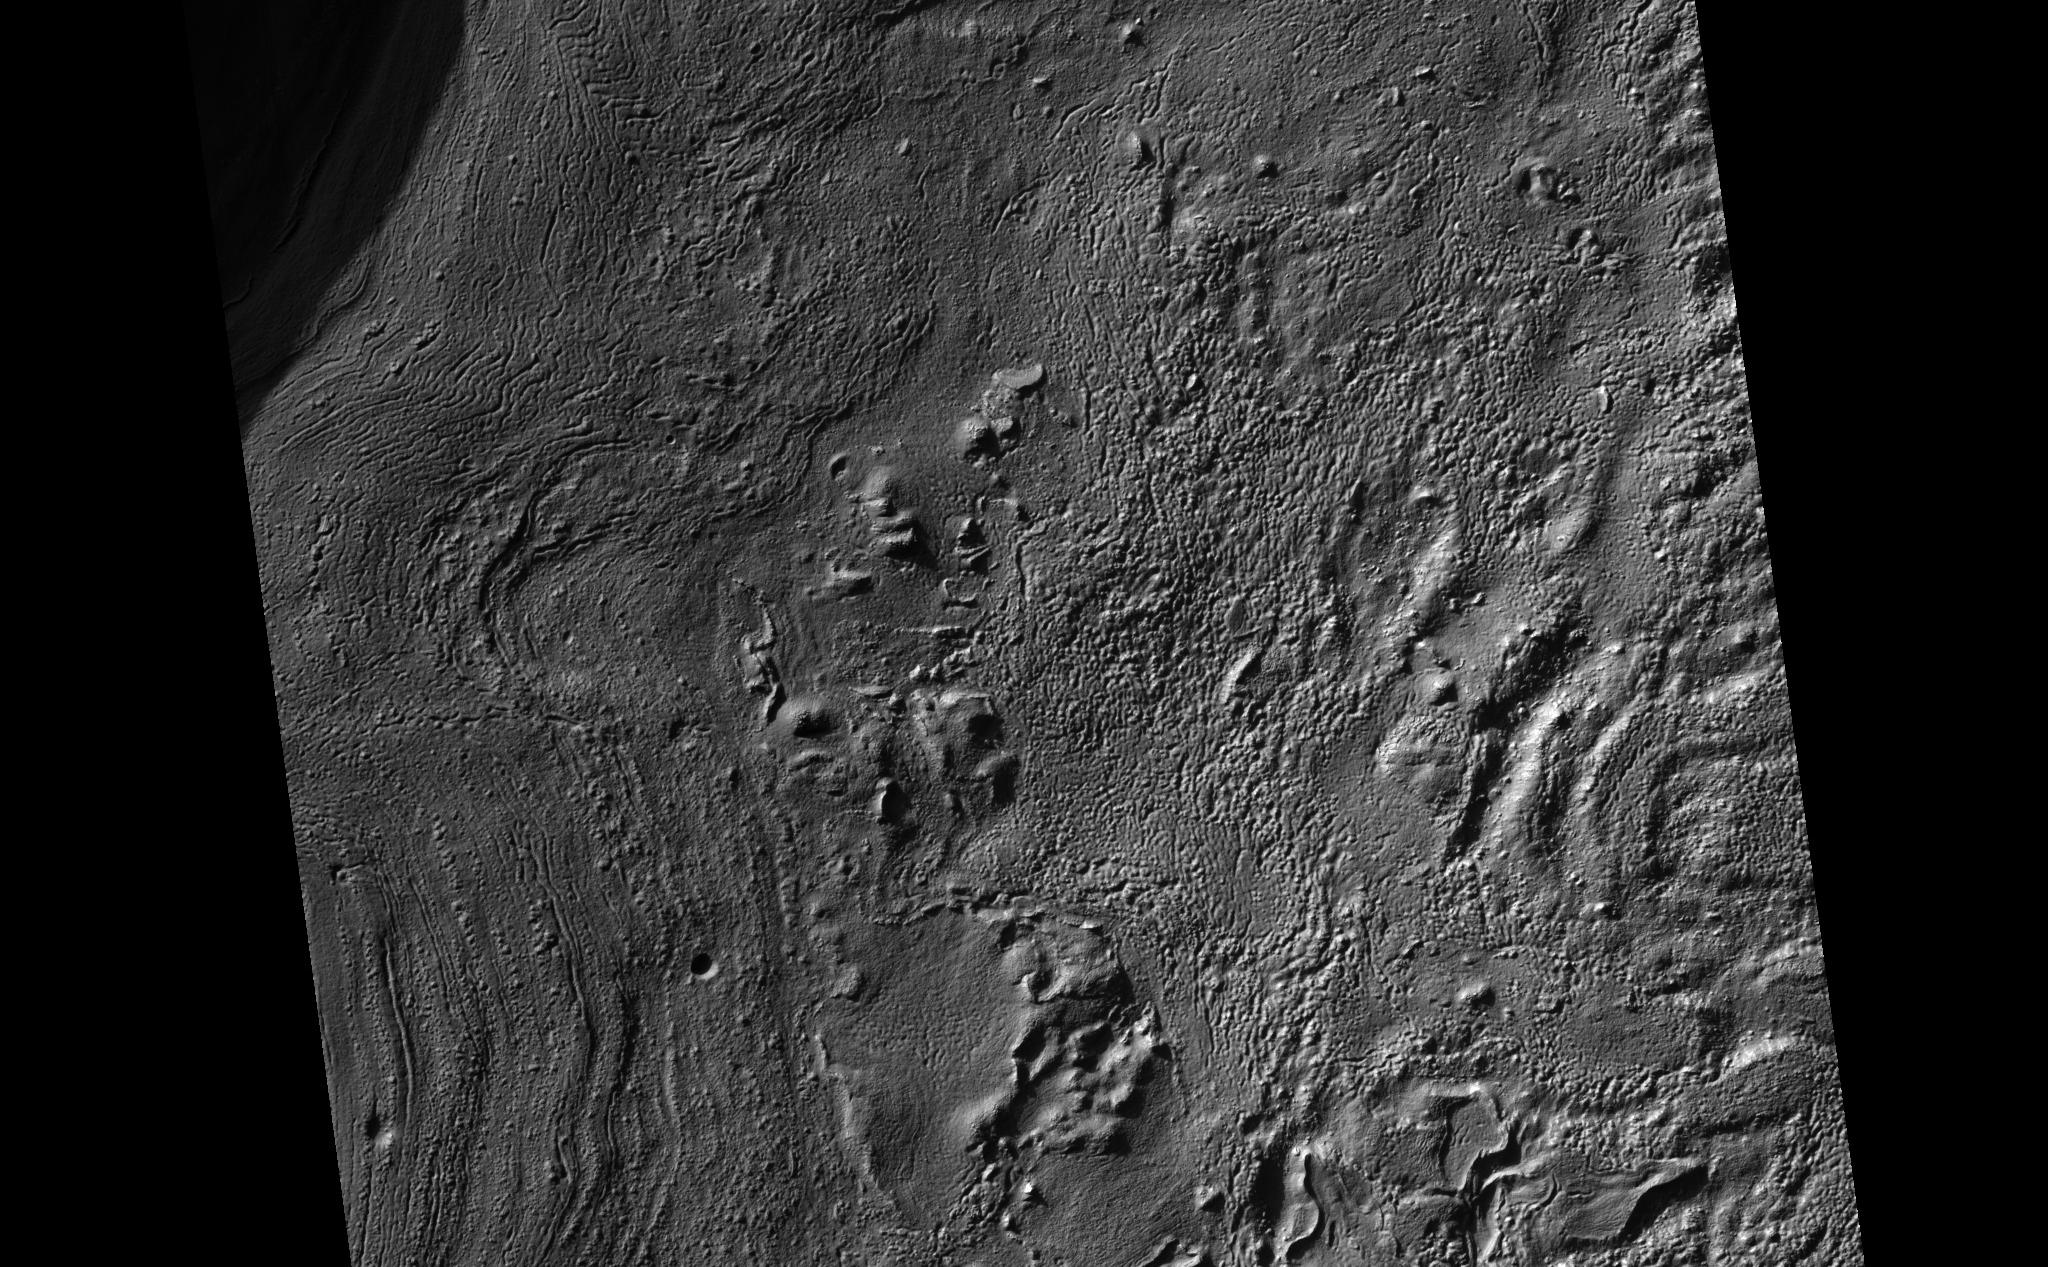 Crater Floor Deposits in Promethei Terra